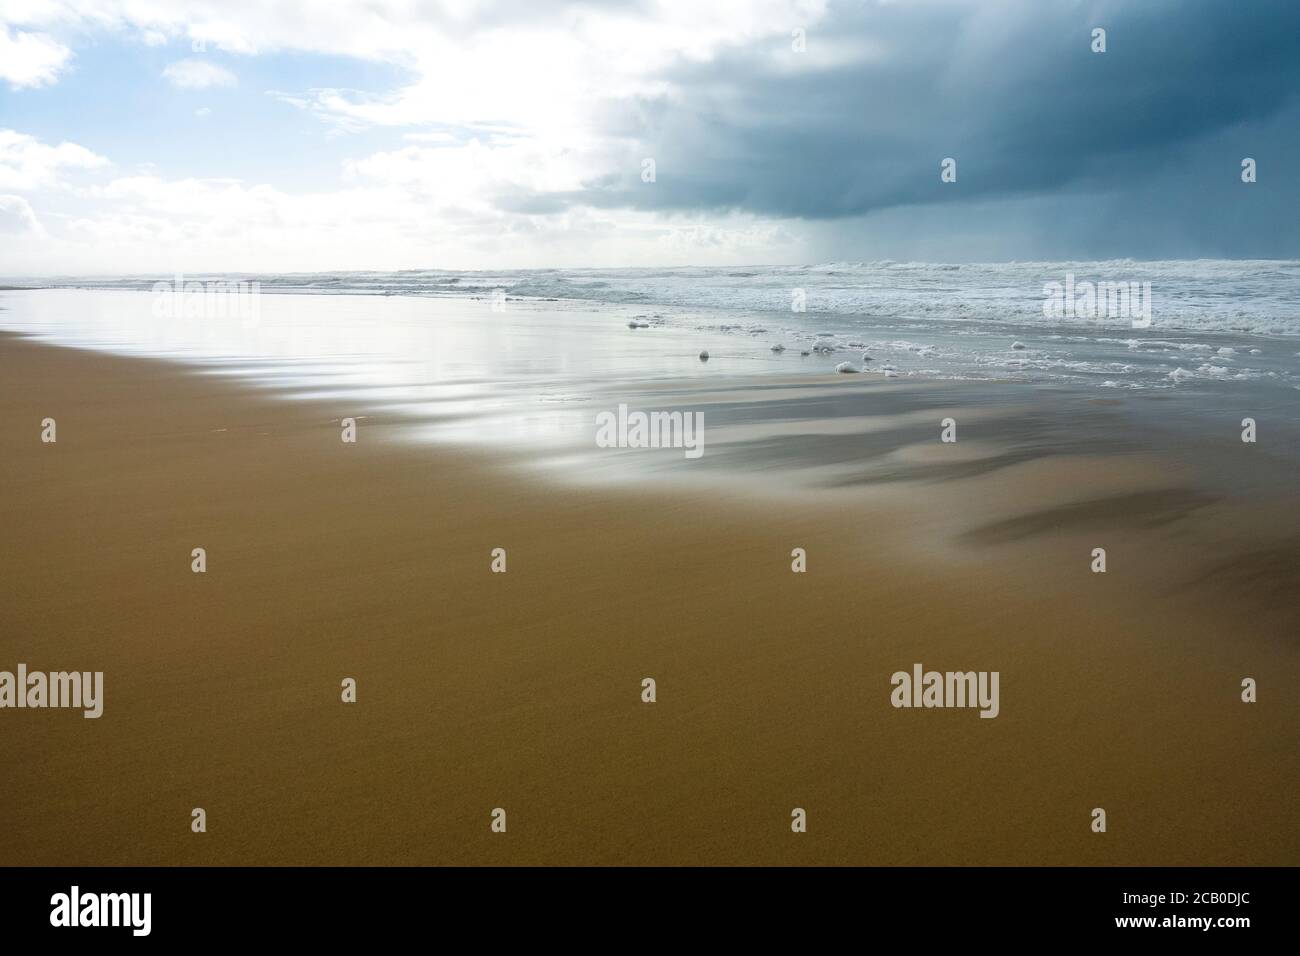 LA plage lonley Ocean sur la côte atlantique de la France près de Lacanau Bordeaux, France. Vent et ciel nuageux jour d'hiver 2020 Banque D'Images